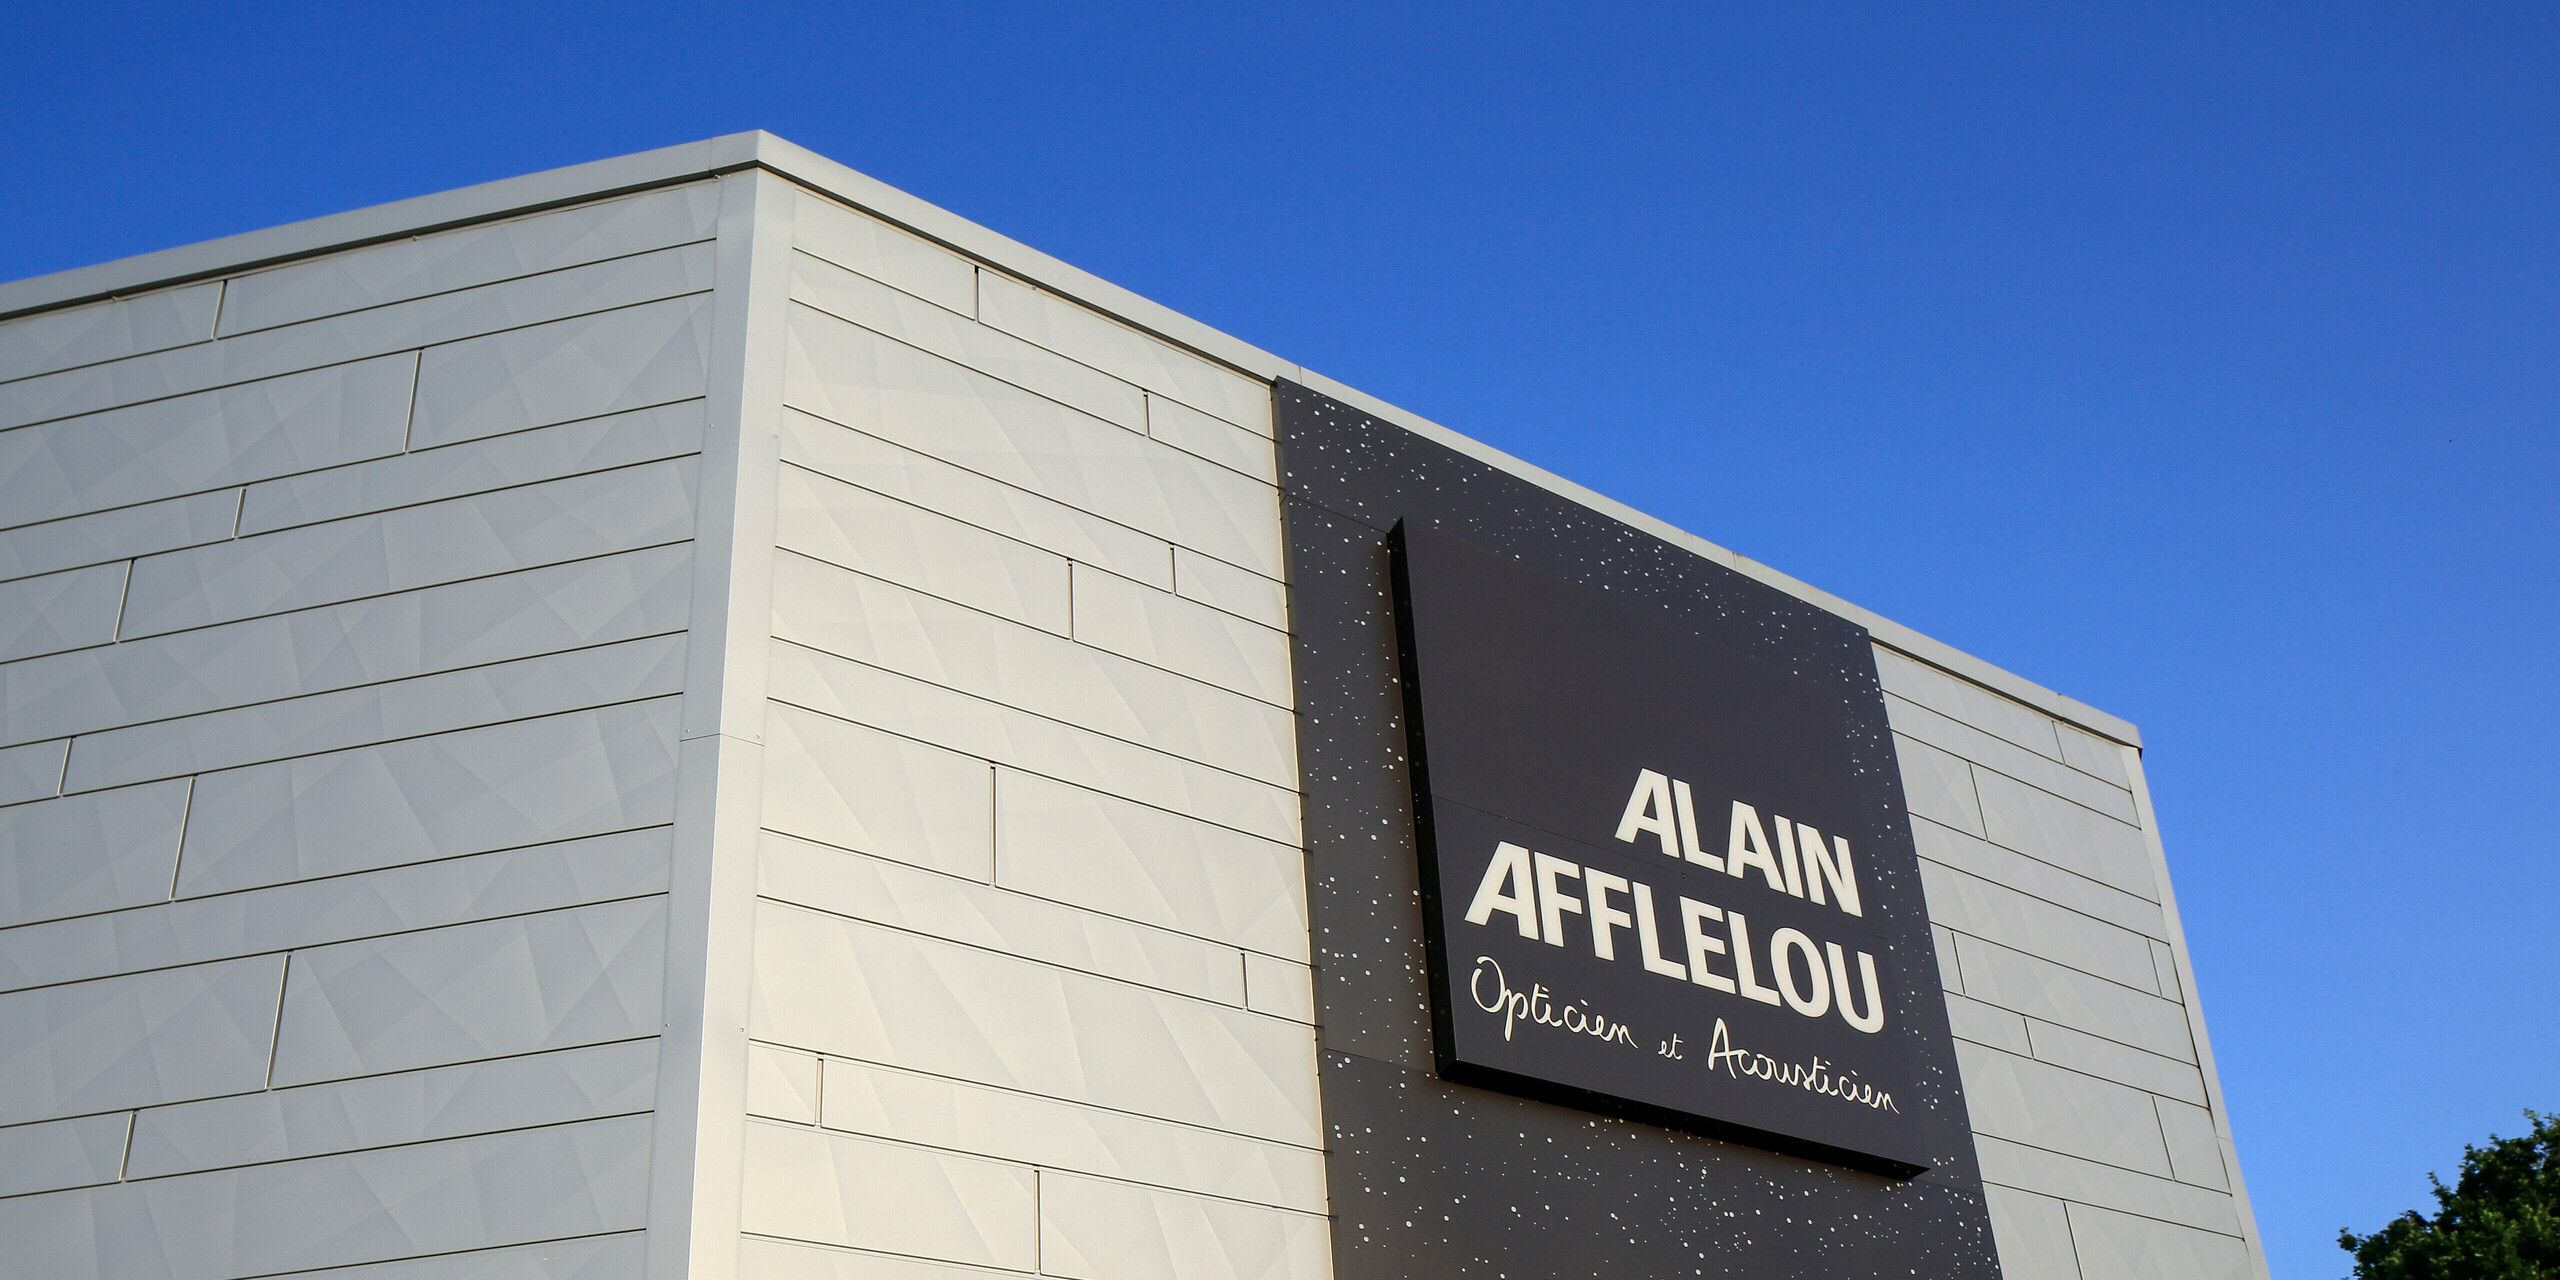 Eingangsbereich des Optik- und Akustik-Shops AFFLELOU in Auray mit großem Firmenschild und einer extravaganten Fassade bestehend aus PREFA Siding.X in Silbermetallic